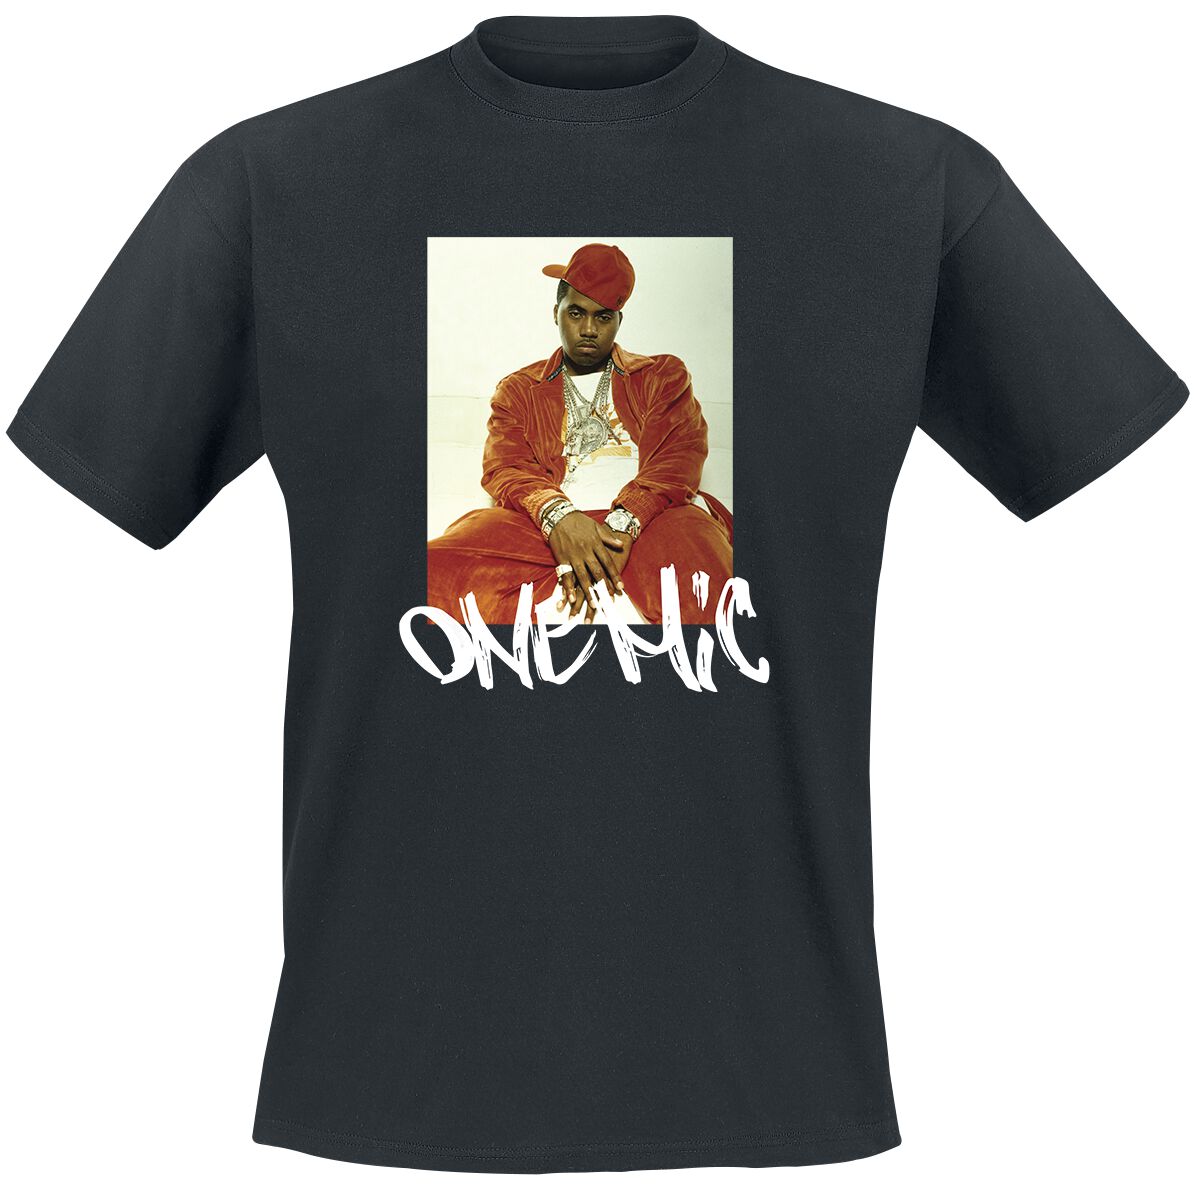 Nas T-Shirt - Stillmatic One Mic - S bis 3XL - für Männer - Größe XXL - schwarz  - Lizenziertes Merchandise!